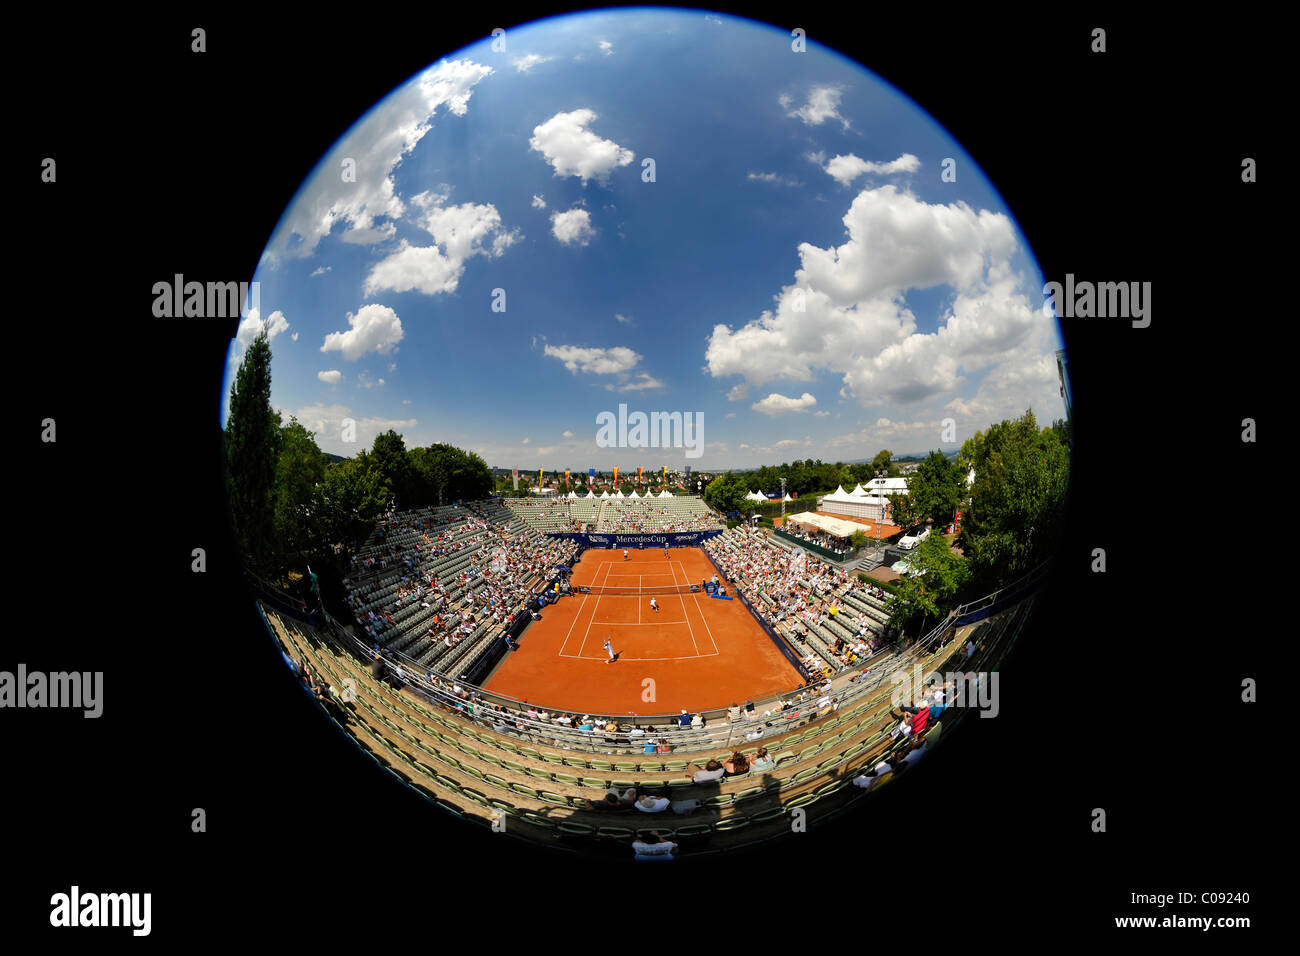 Descripción El Centro de la cancha, el Torneo de Tenis de la ATP, Mercedes-Cup Weissenhof, Stuttgart, Baden-Wurtemberg, Alemania, Europa Foto de stock